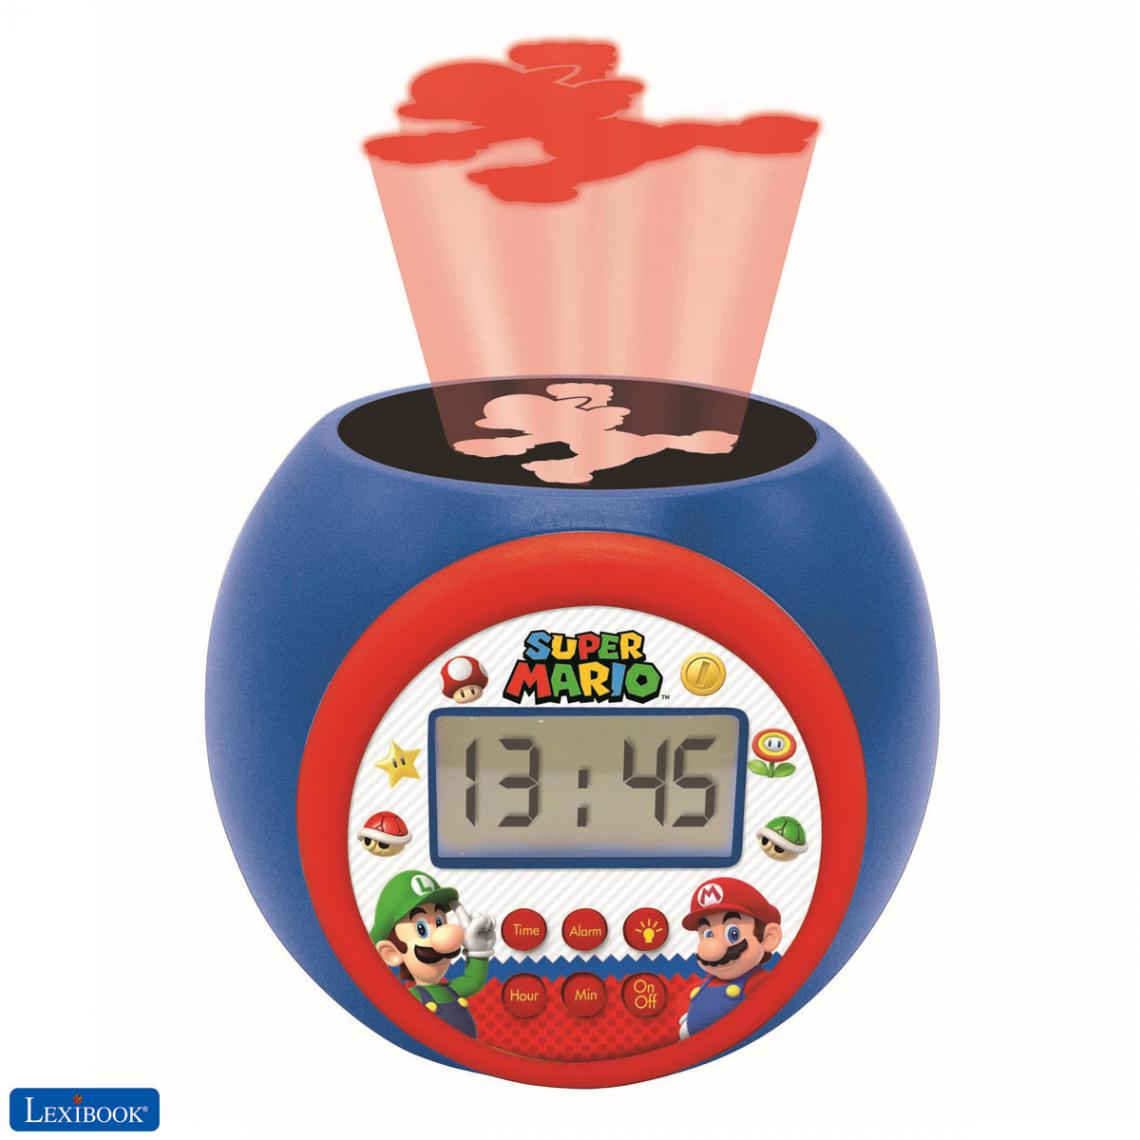 lexibook - Réveil projecteur Super Mario fonction minuteur - Radio, lecteur CD/MP3 enfant